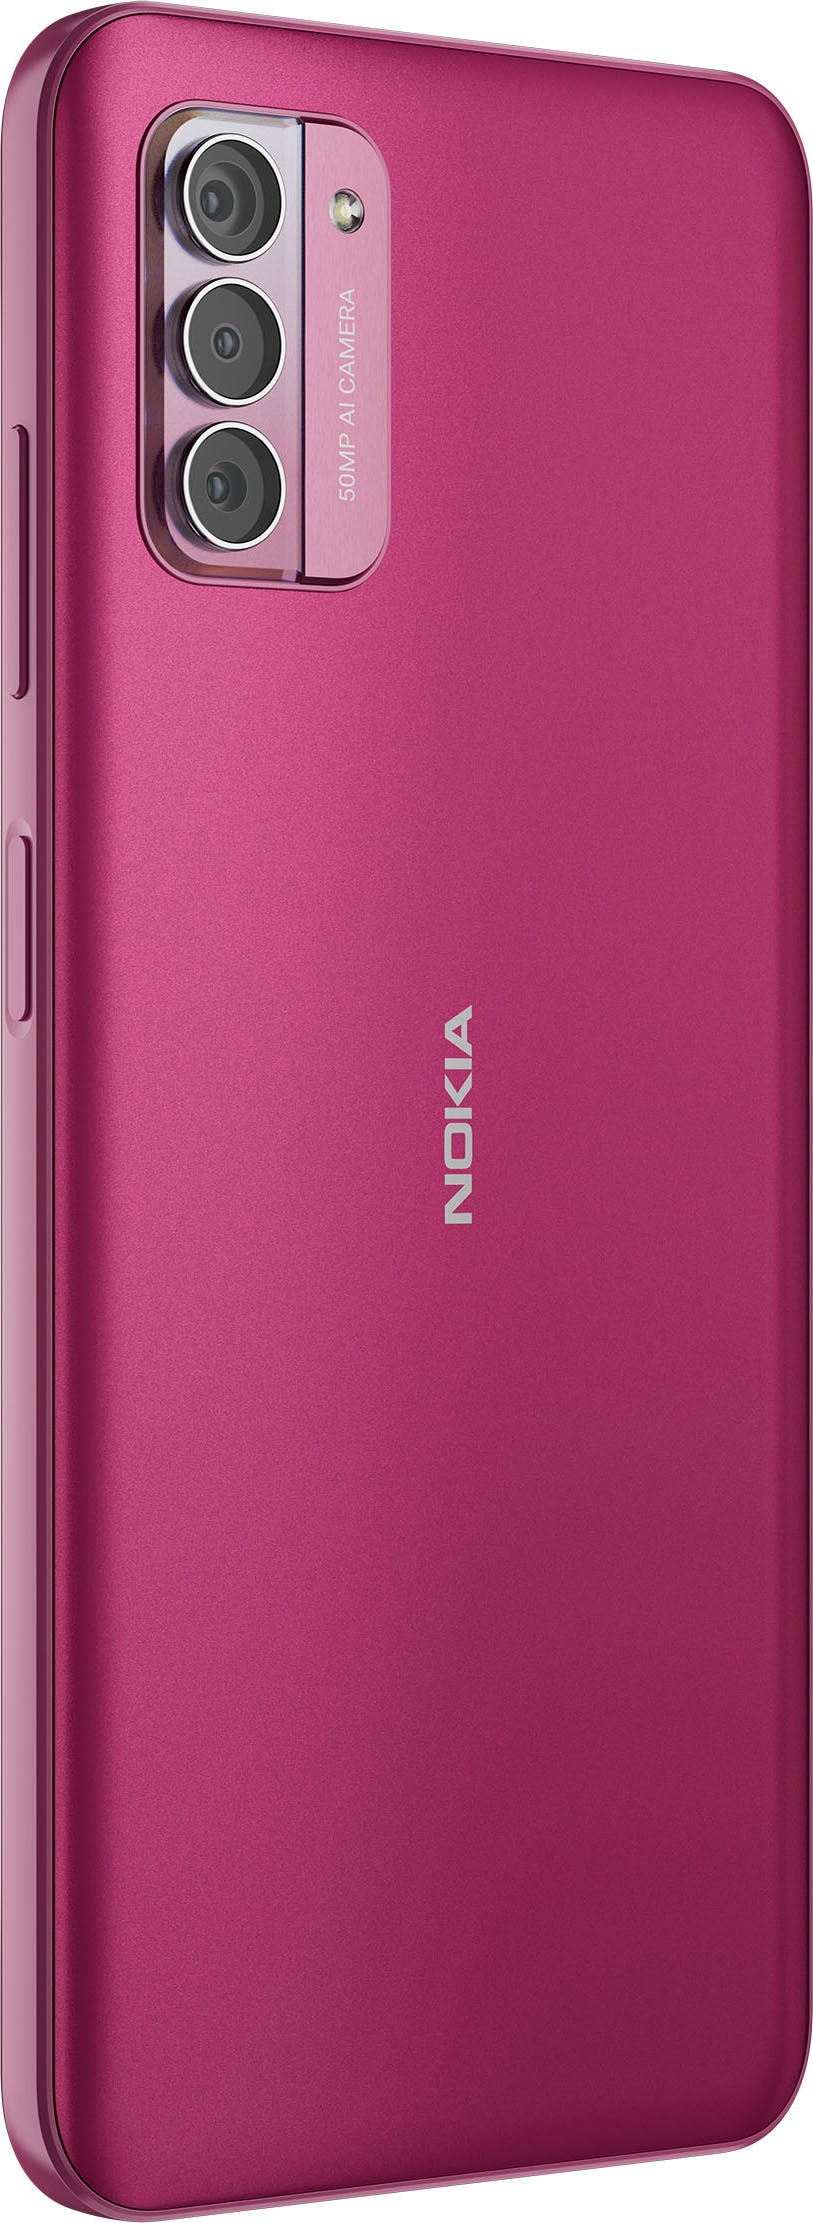 »G42«, Speicherplatz, Kamera purple, GB Nokia 50 16,9 MP Smartphone | cm/6,65 BAUR Zoll, 128